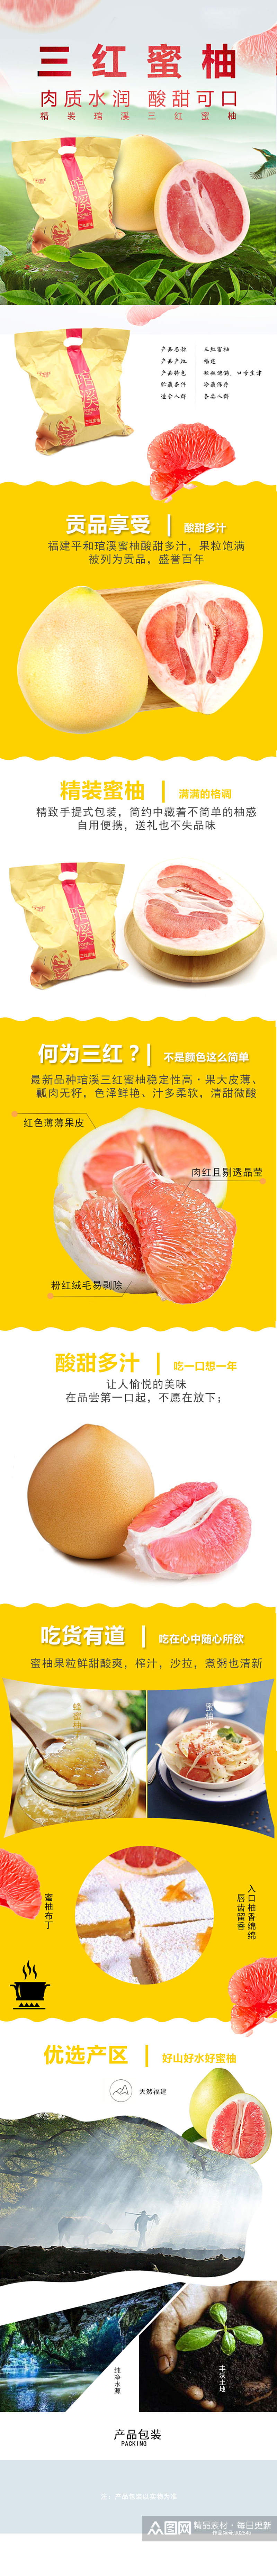 柚子国产蜜柚三红蜜柚鲜水果详情页模版素材